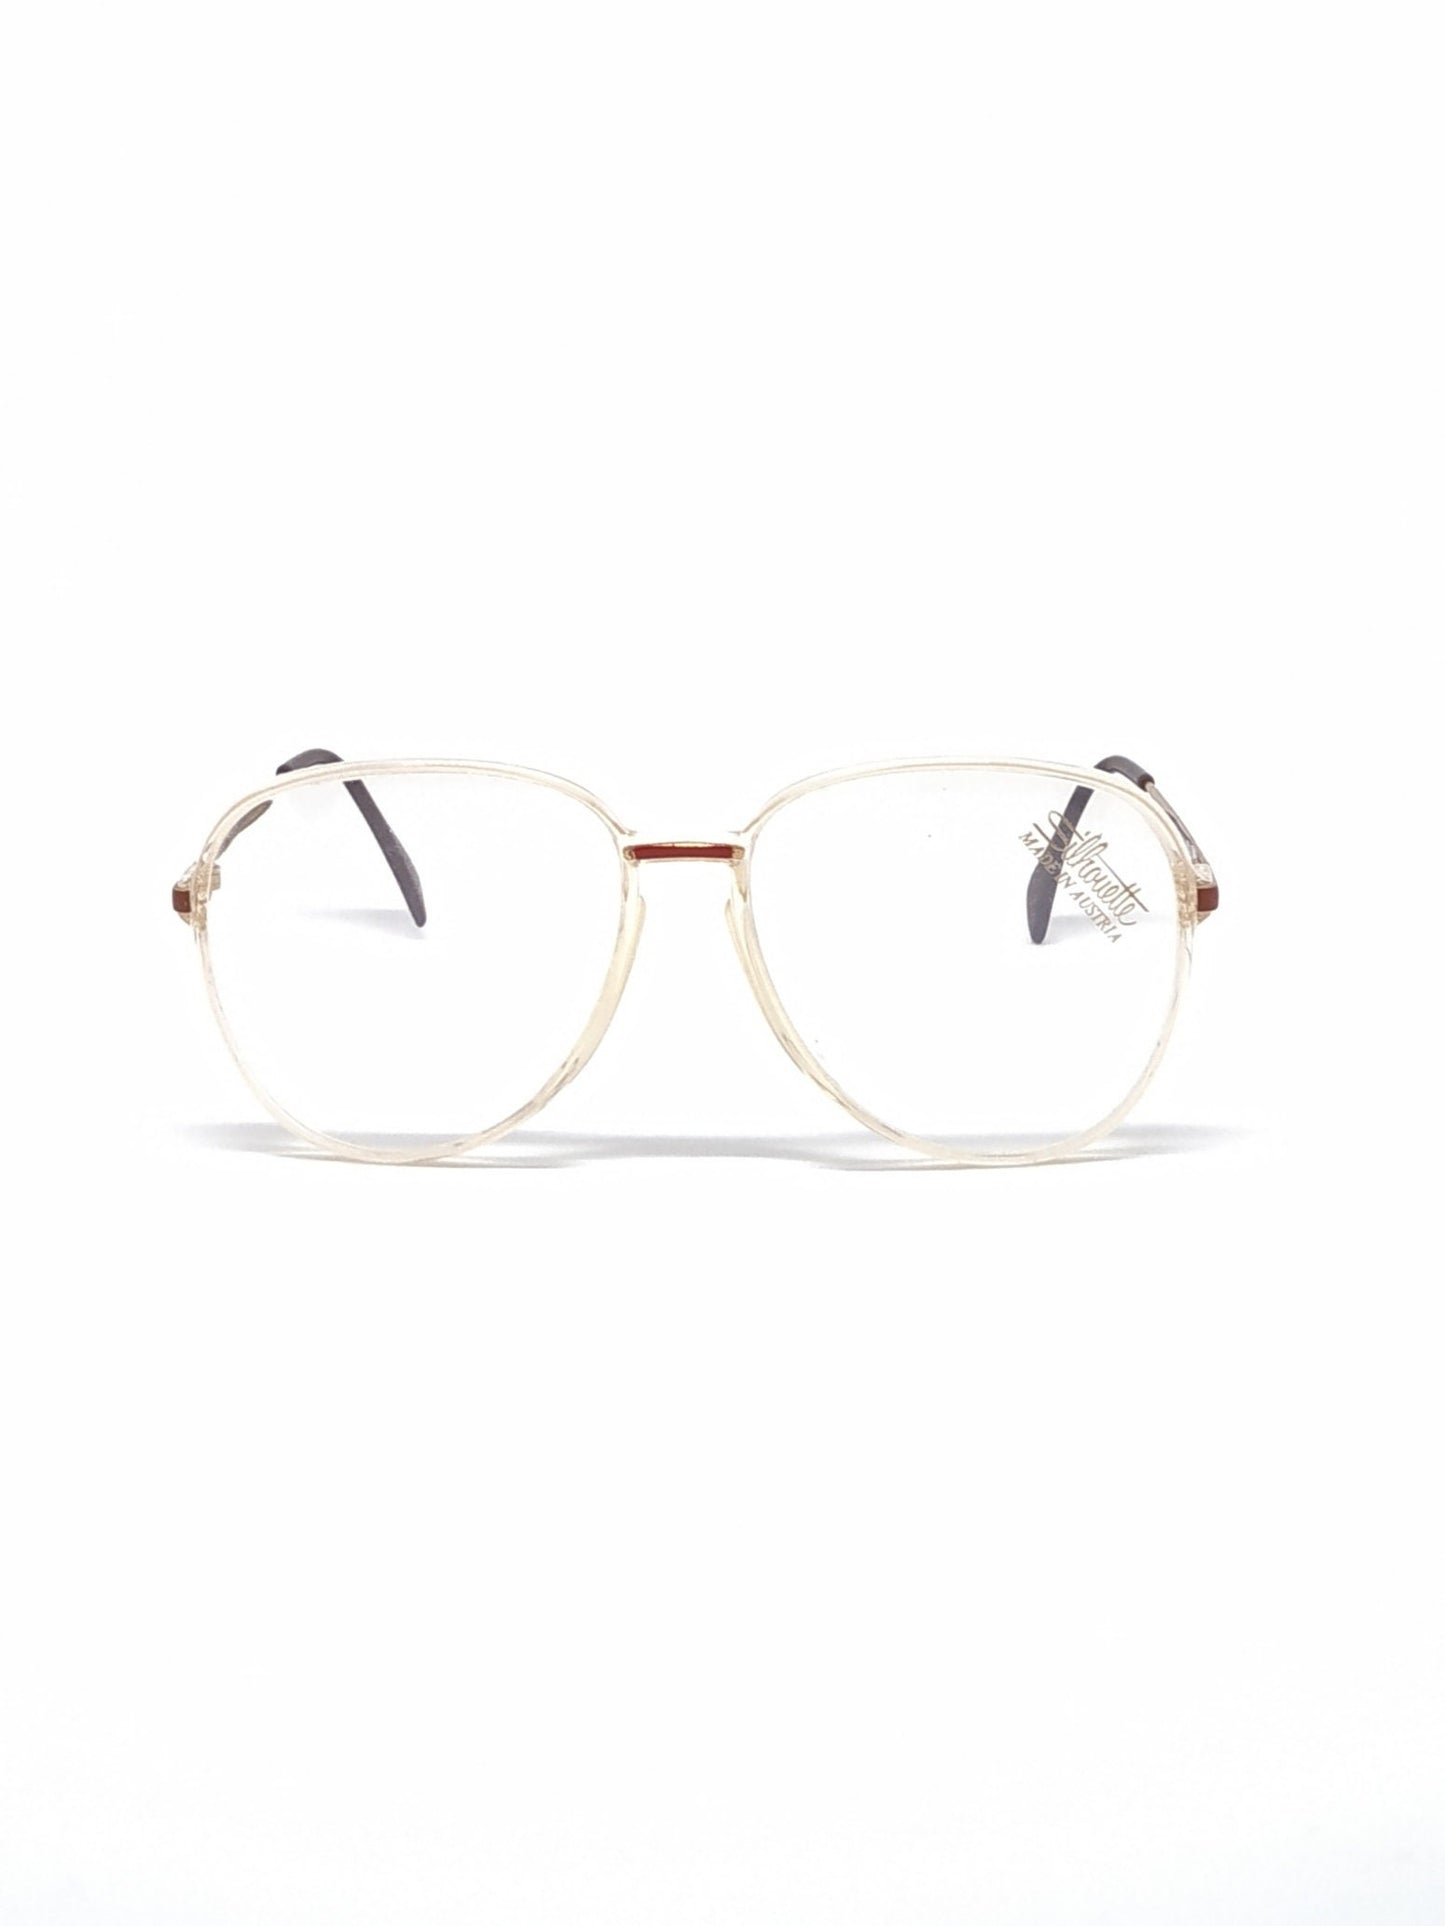 Vintage New old stock eyeglasses frames. Mod. M2046